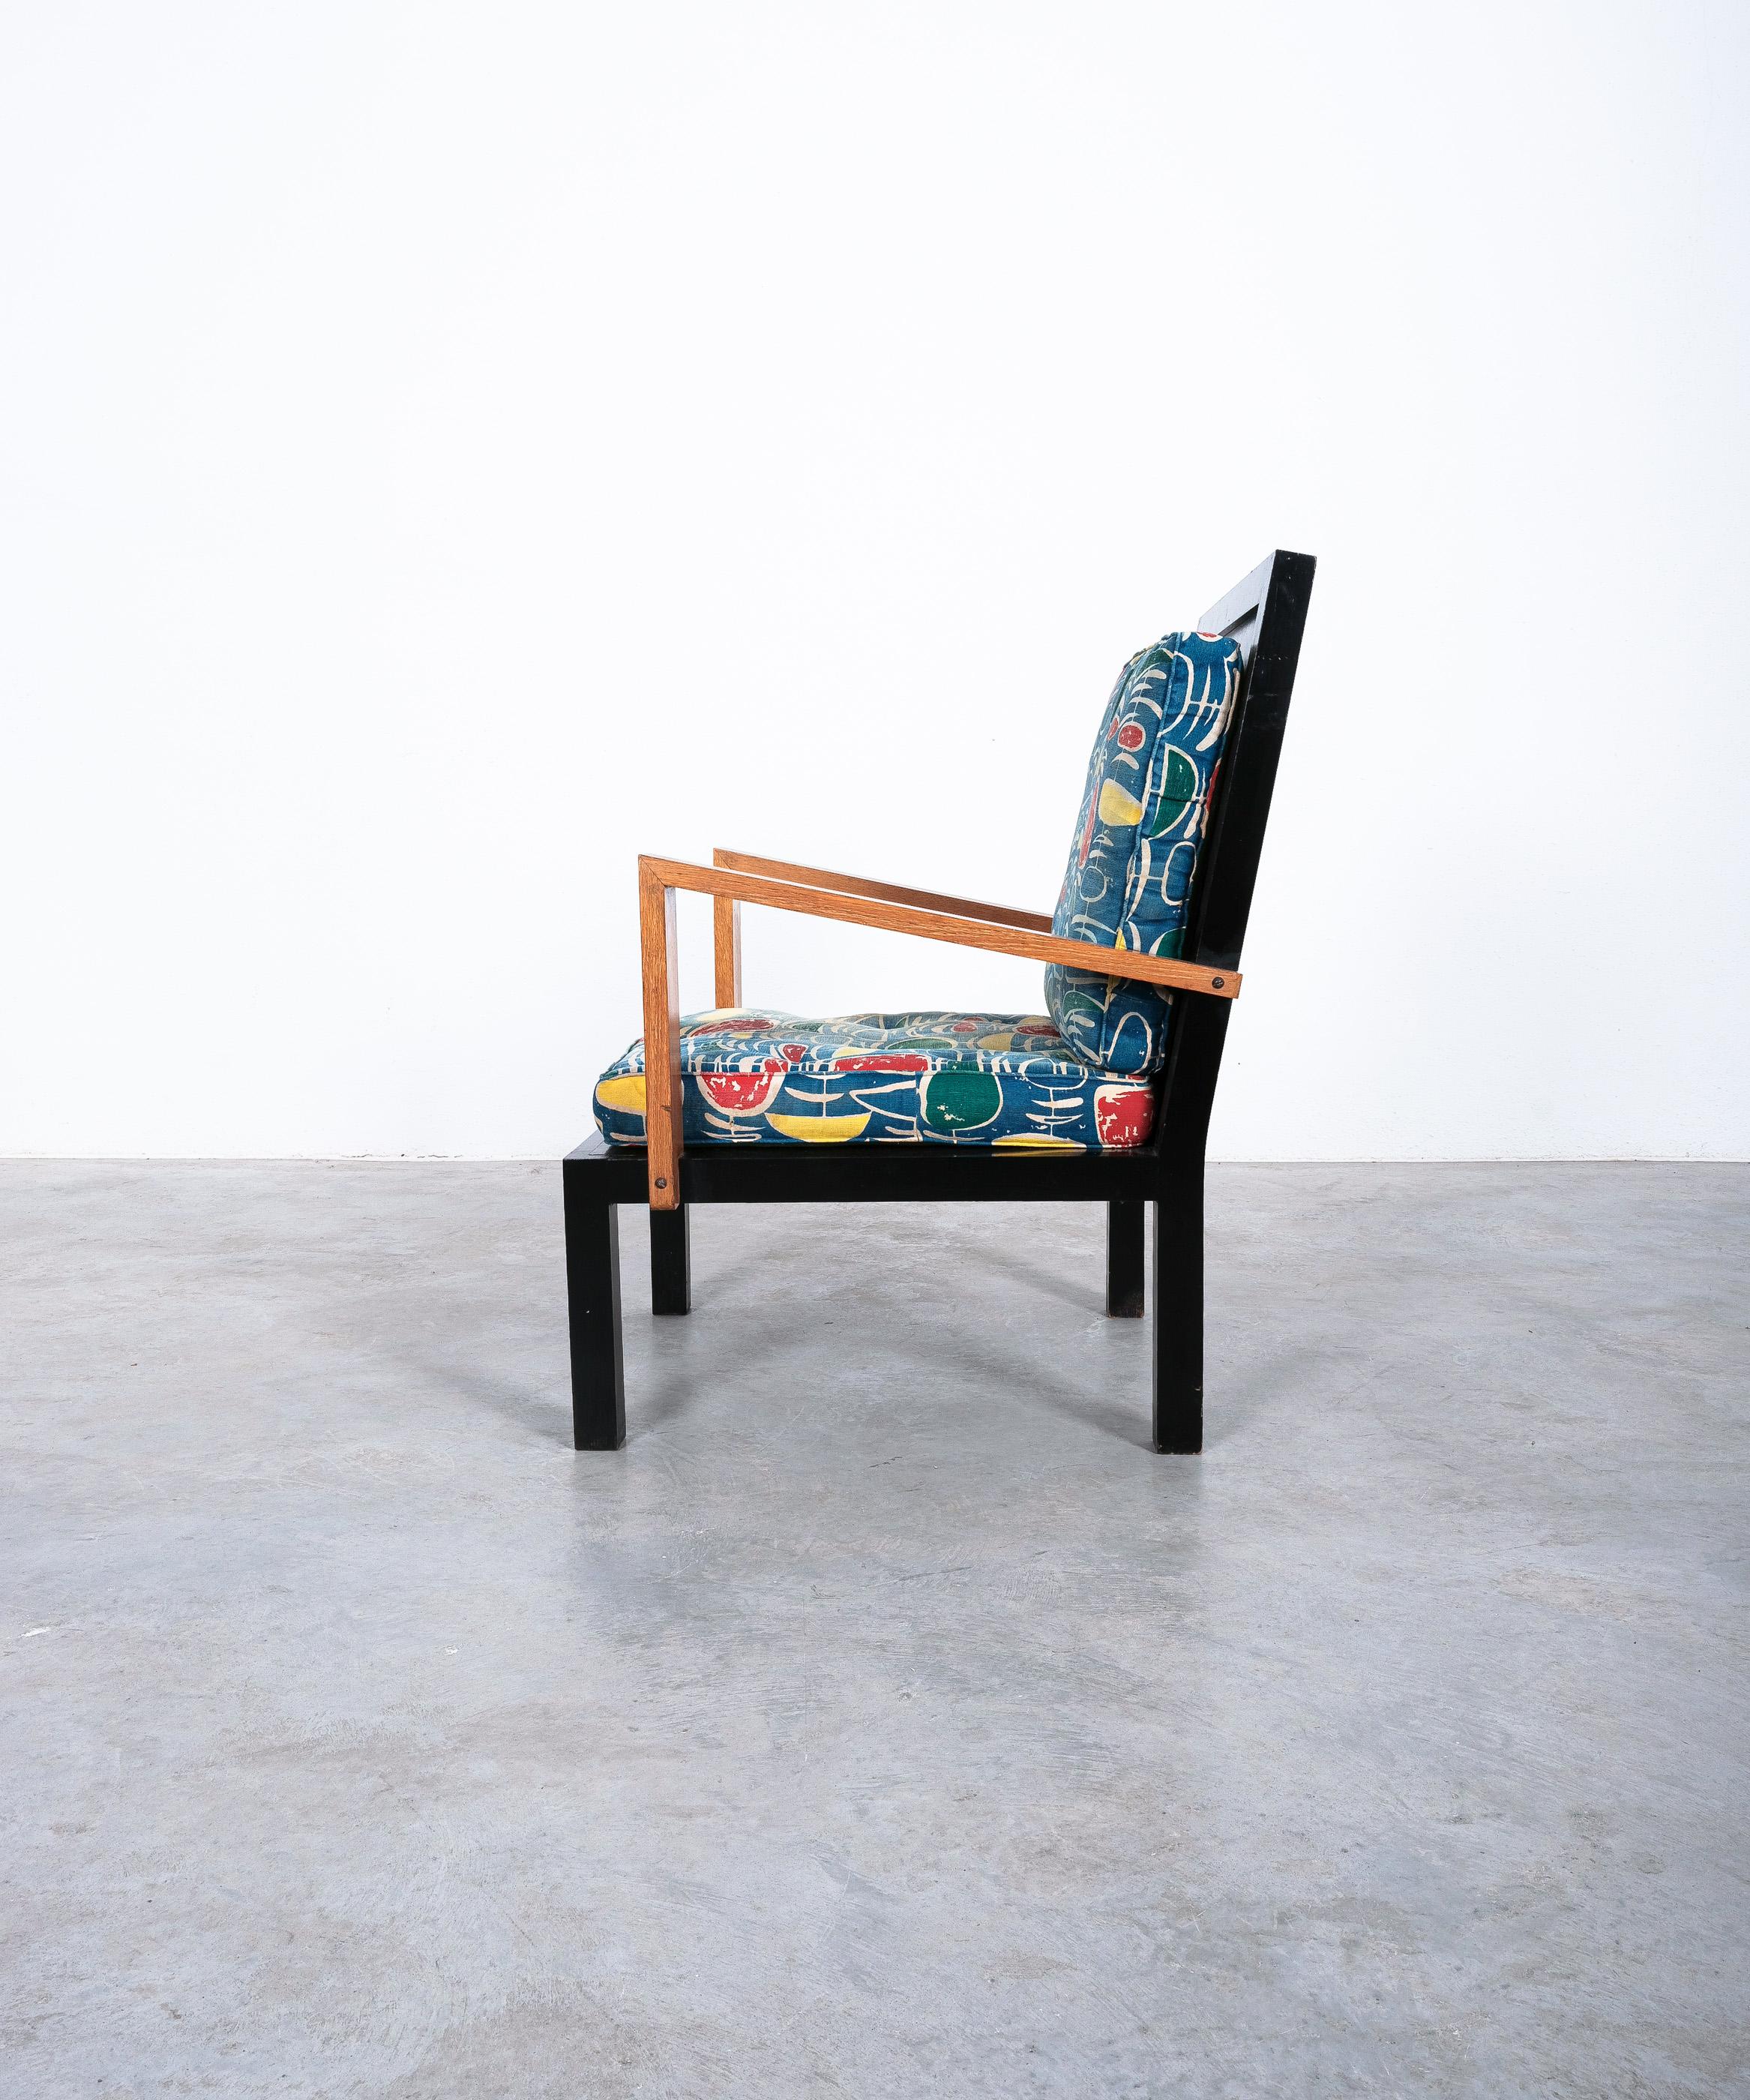 Seltener rationalistischer Stuhl attr. Gino Levi Montalcini, entworfen 1940, Italien

Guter Vintage-Zustand.
Abmessungen: 26